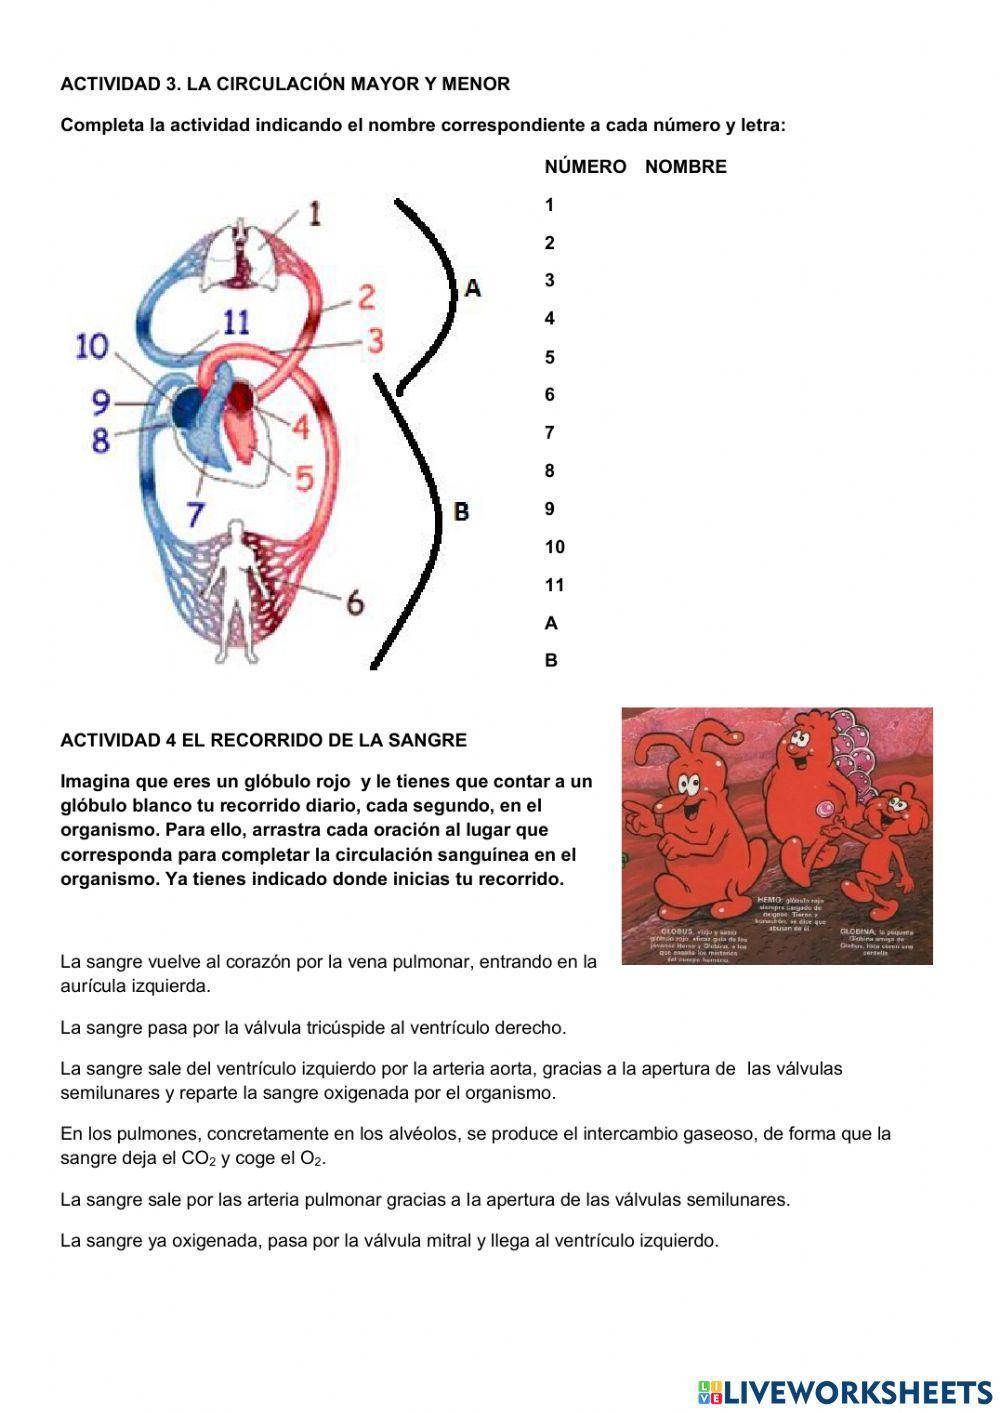 5.3 Repaso del ciclo cardiaco y la circulación